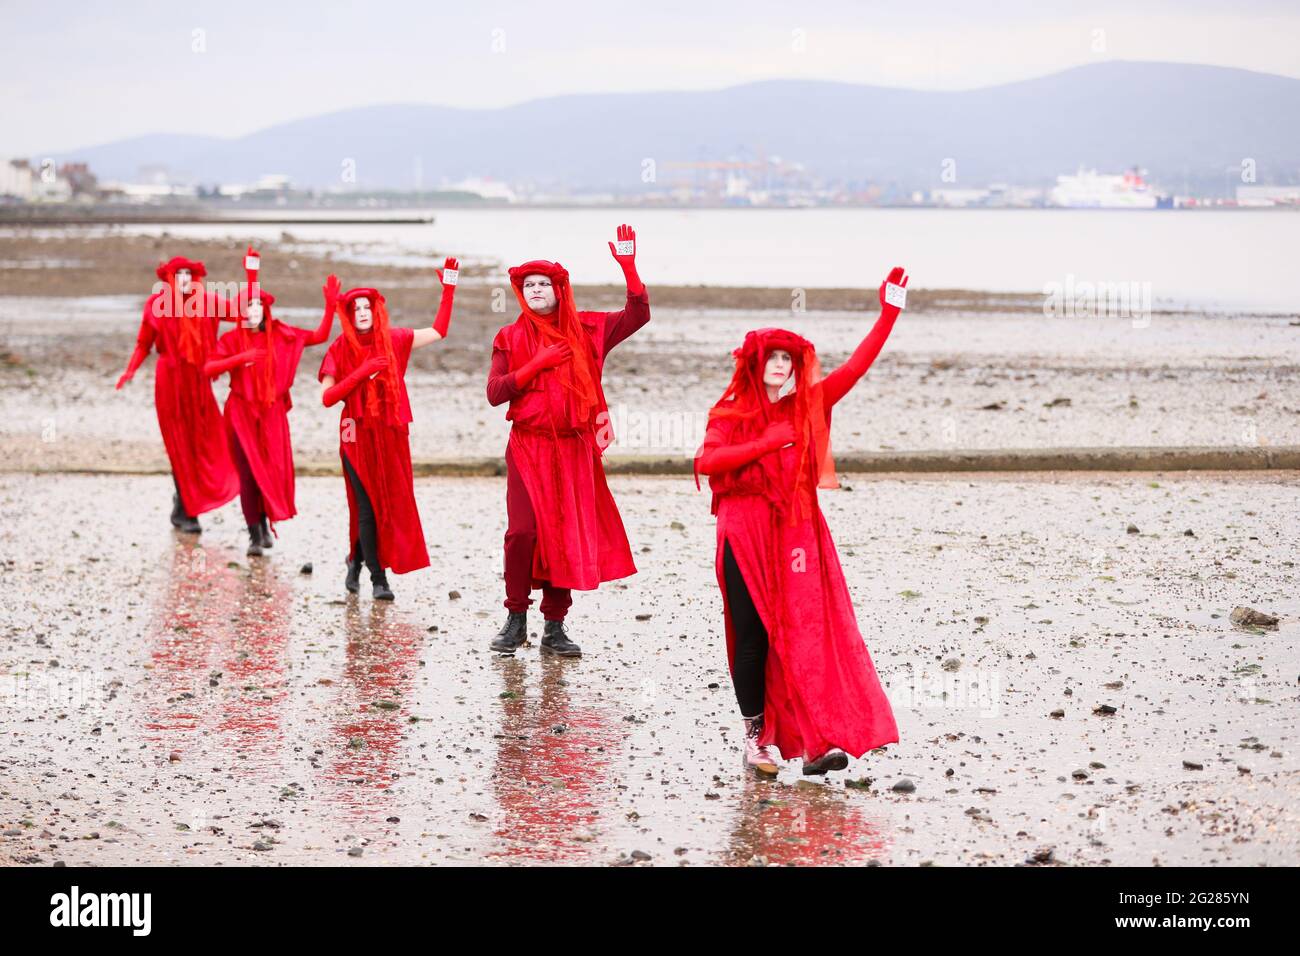 Die Brigade der Roten Rebellen veranstalte im Belfast Lough im Seapark, Co. Down, einen „Tee im Meer“-Protest vor dem G7-Gipfel, um den Anstieg des Meeresspiegels hervorzuheben. Stockfoto